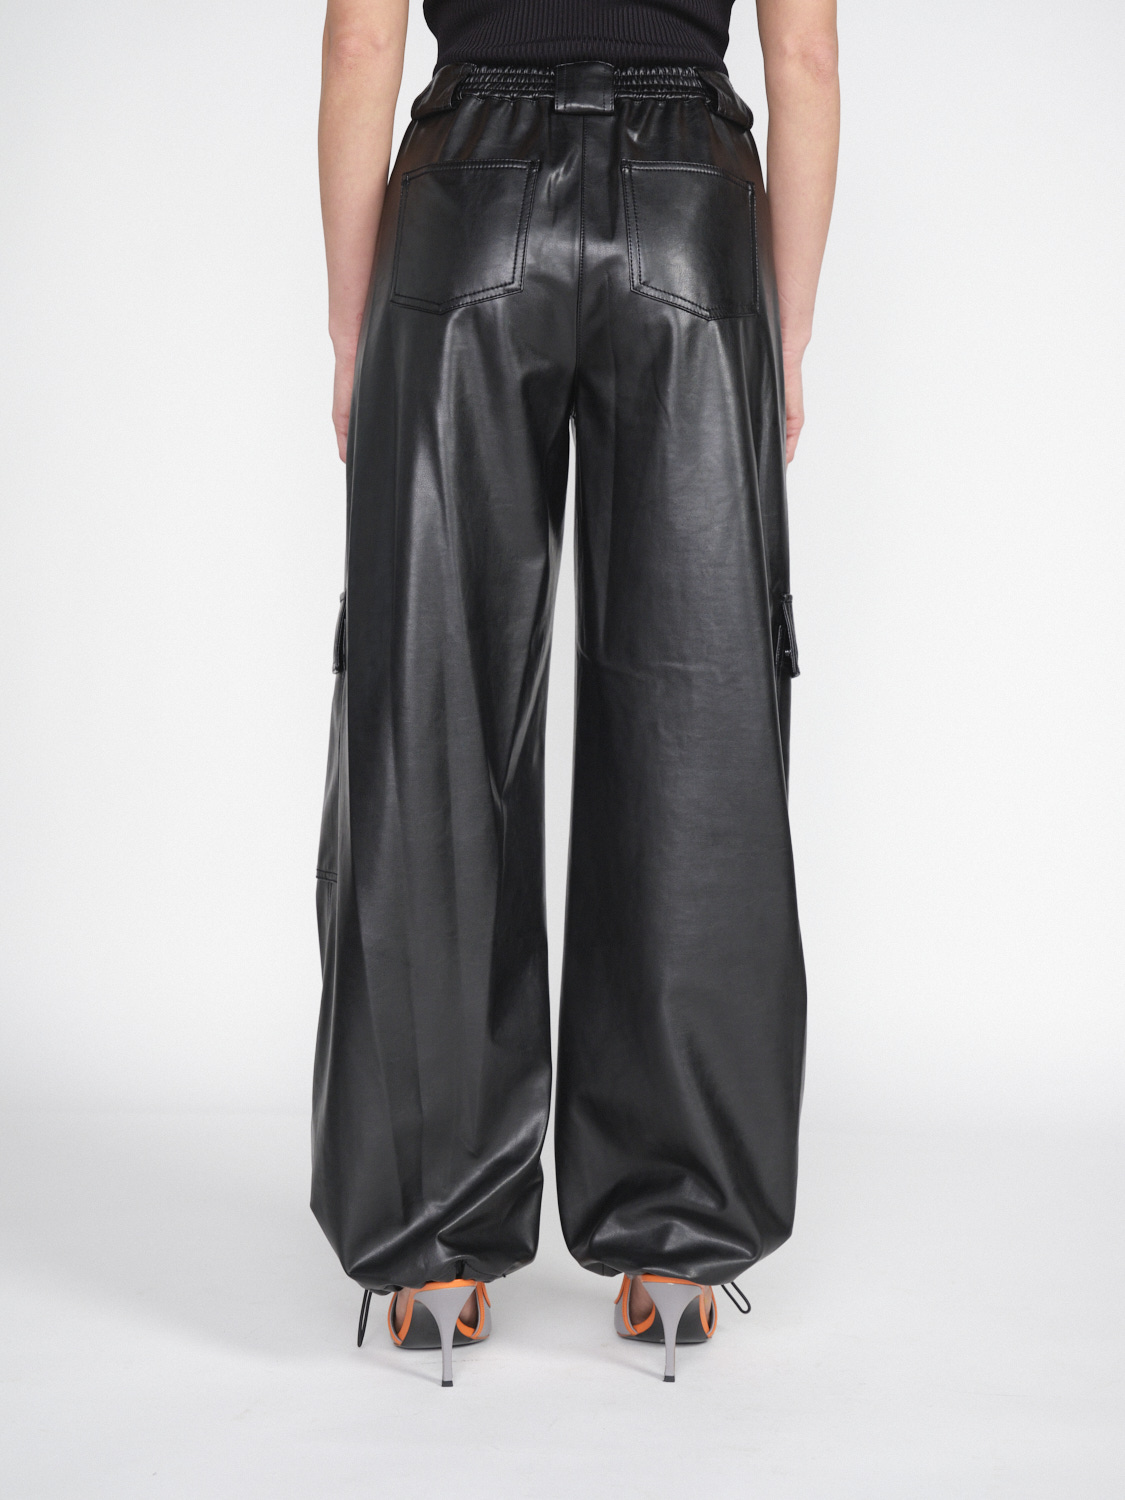 Simkhai Sofia – cargo trousers in fake leather  black 38